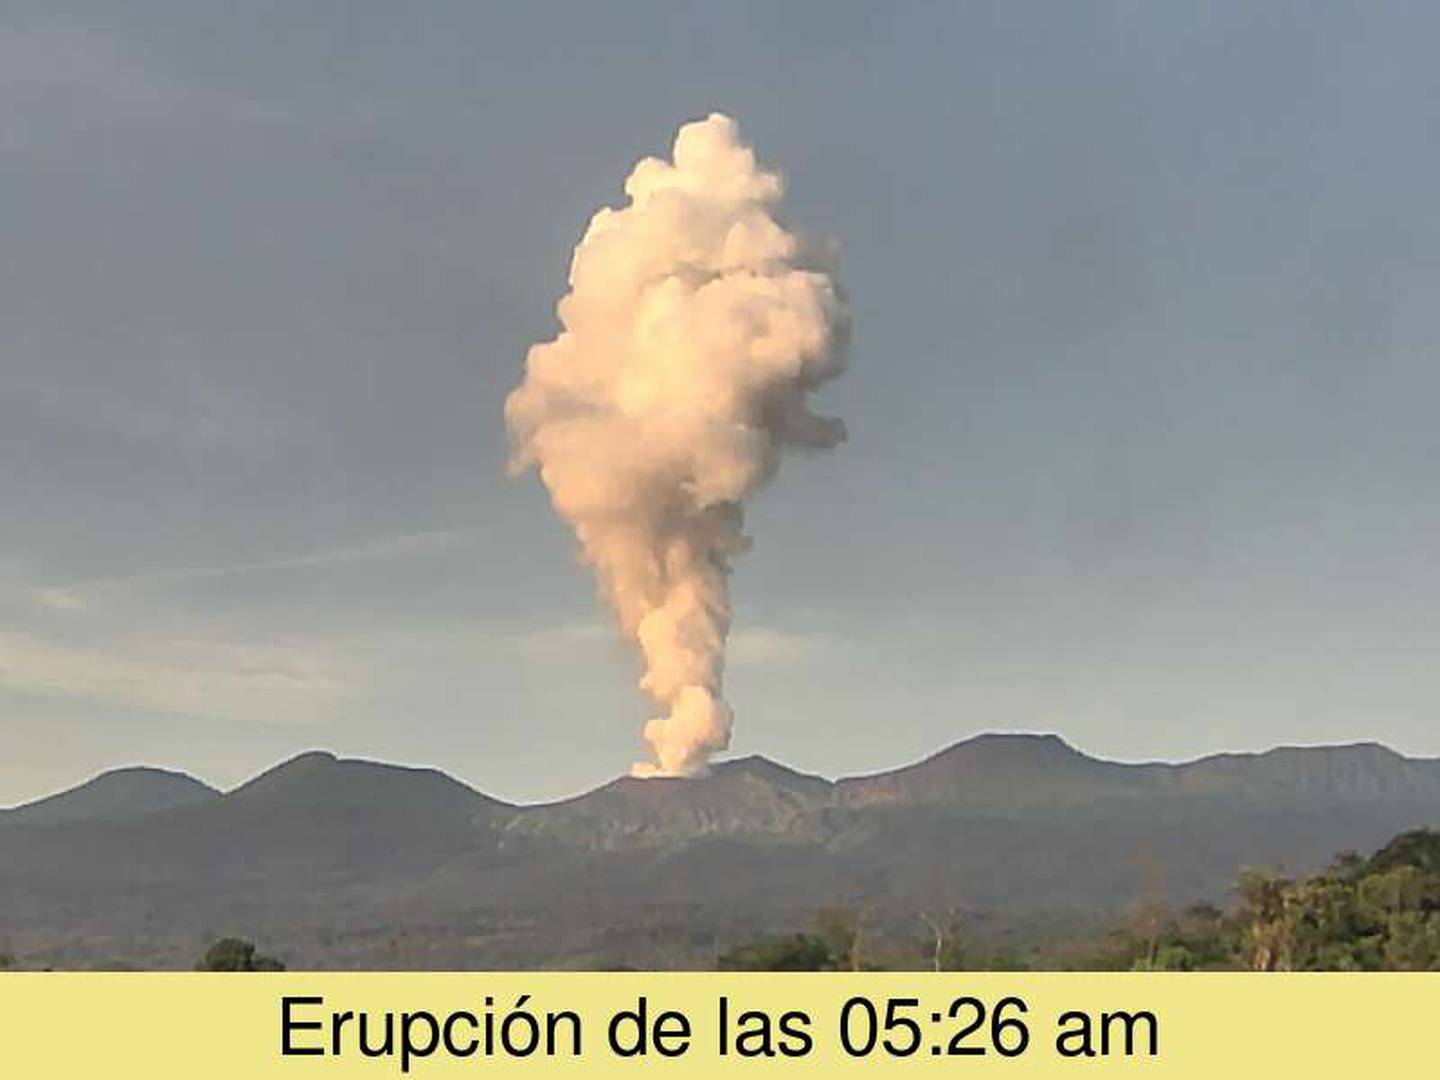 La pluma lanzada por el volcán alcanzó los 3500 metros de altura. Foto Ovsicori.